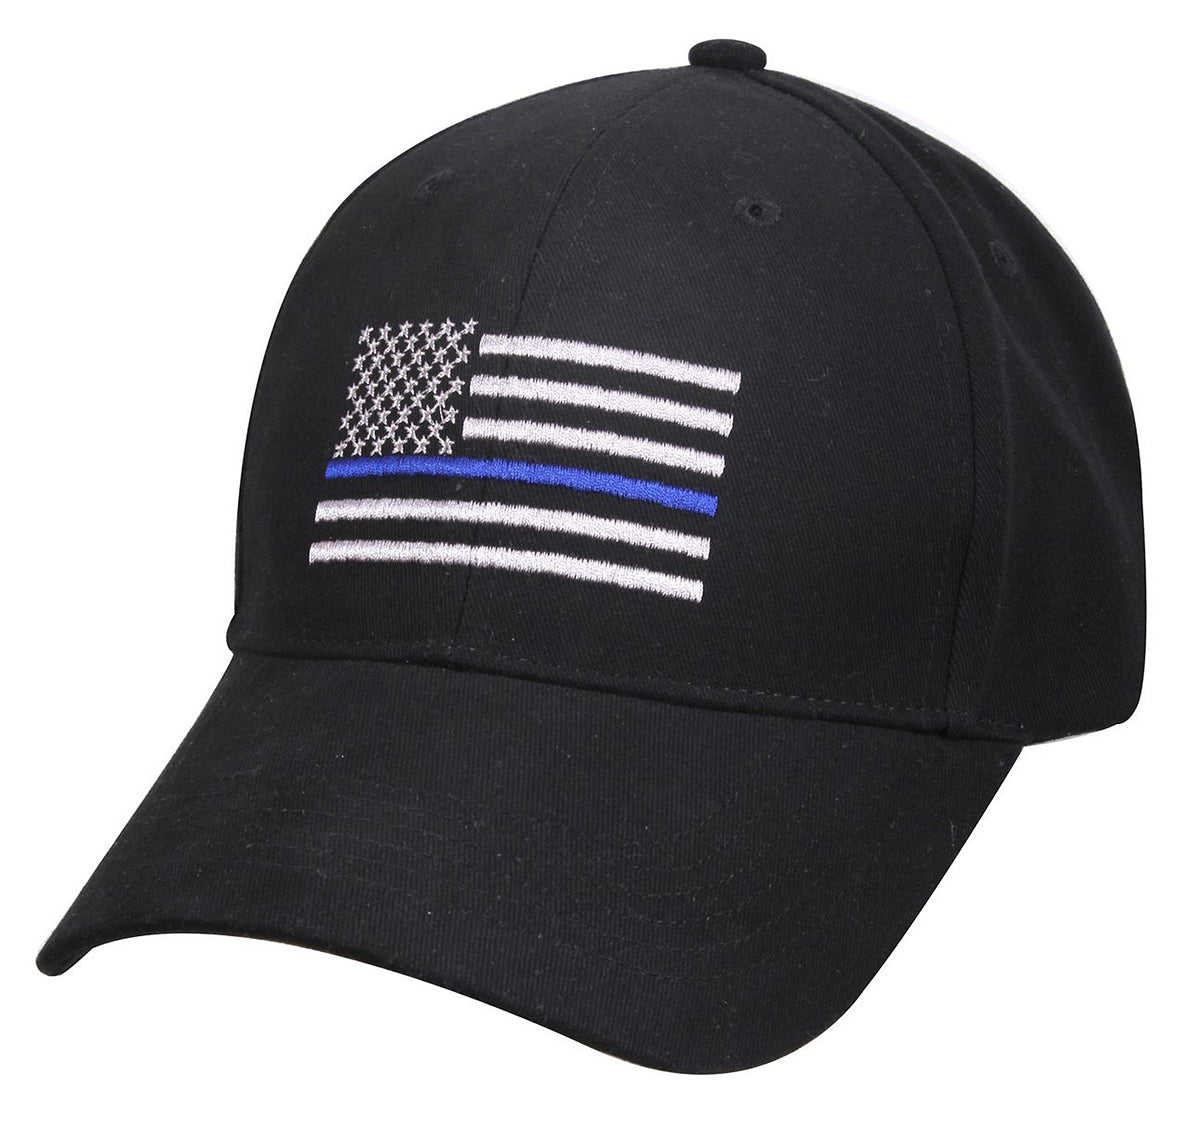 Thin Blue Line Flag Embroidered Adjustable Strap Back Hat